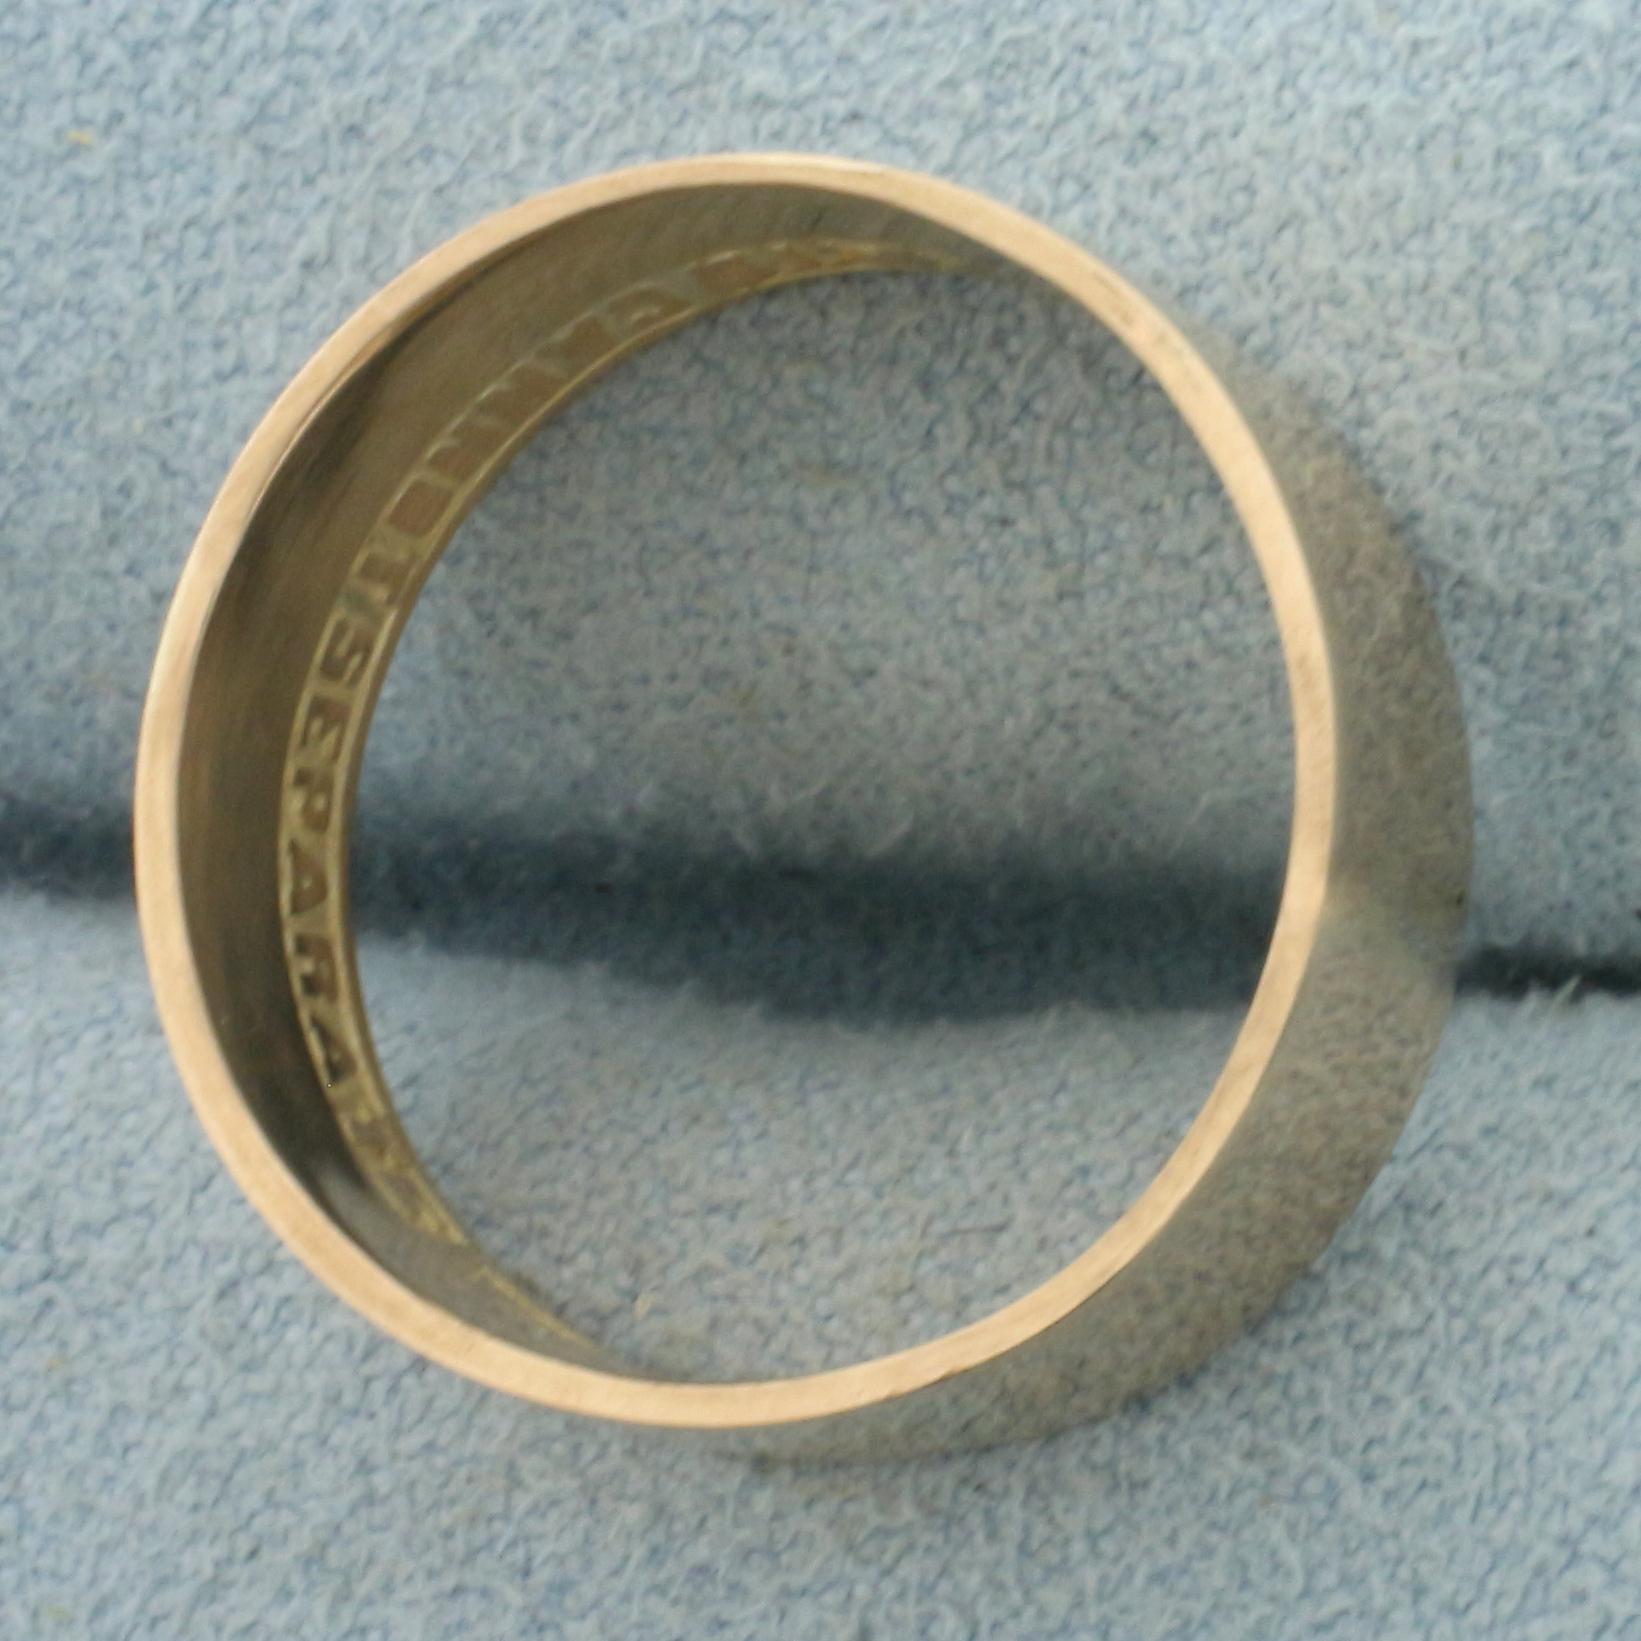 Scottish Rite Masonic Band Ring In 10k Yellow Gold